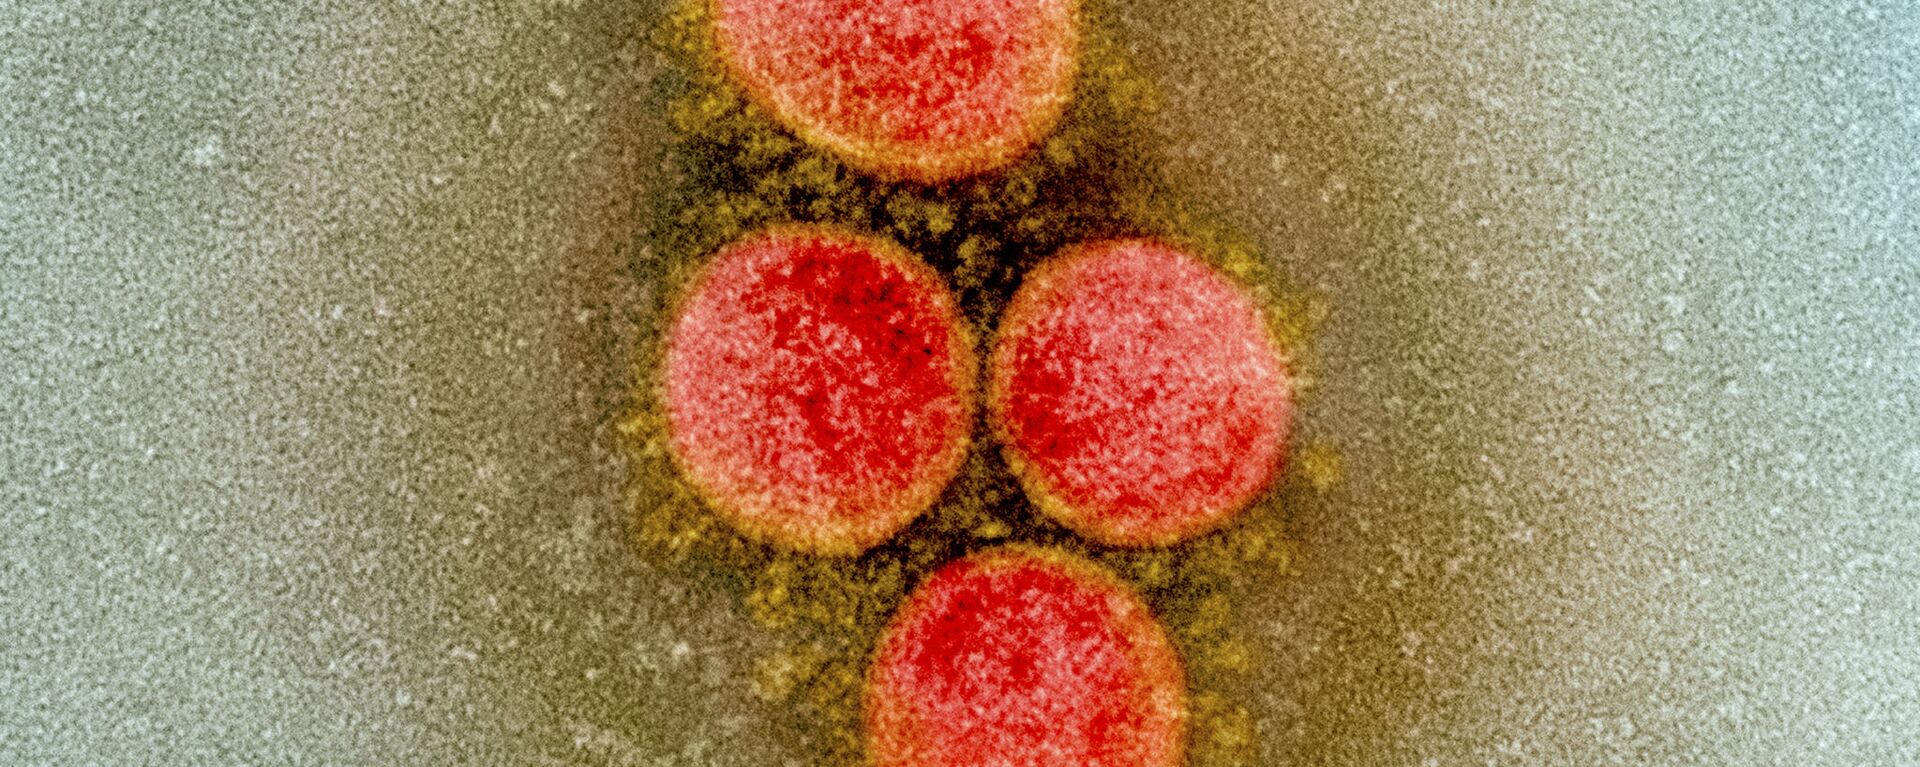 Клетка коронавируса под микроскопом  - Sputnik Грузия, 1920, 04.12.2020